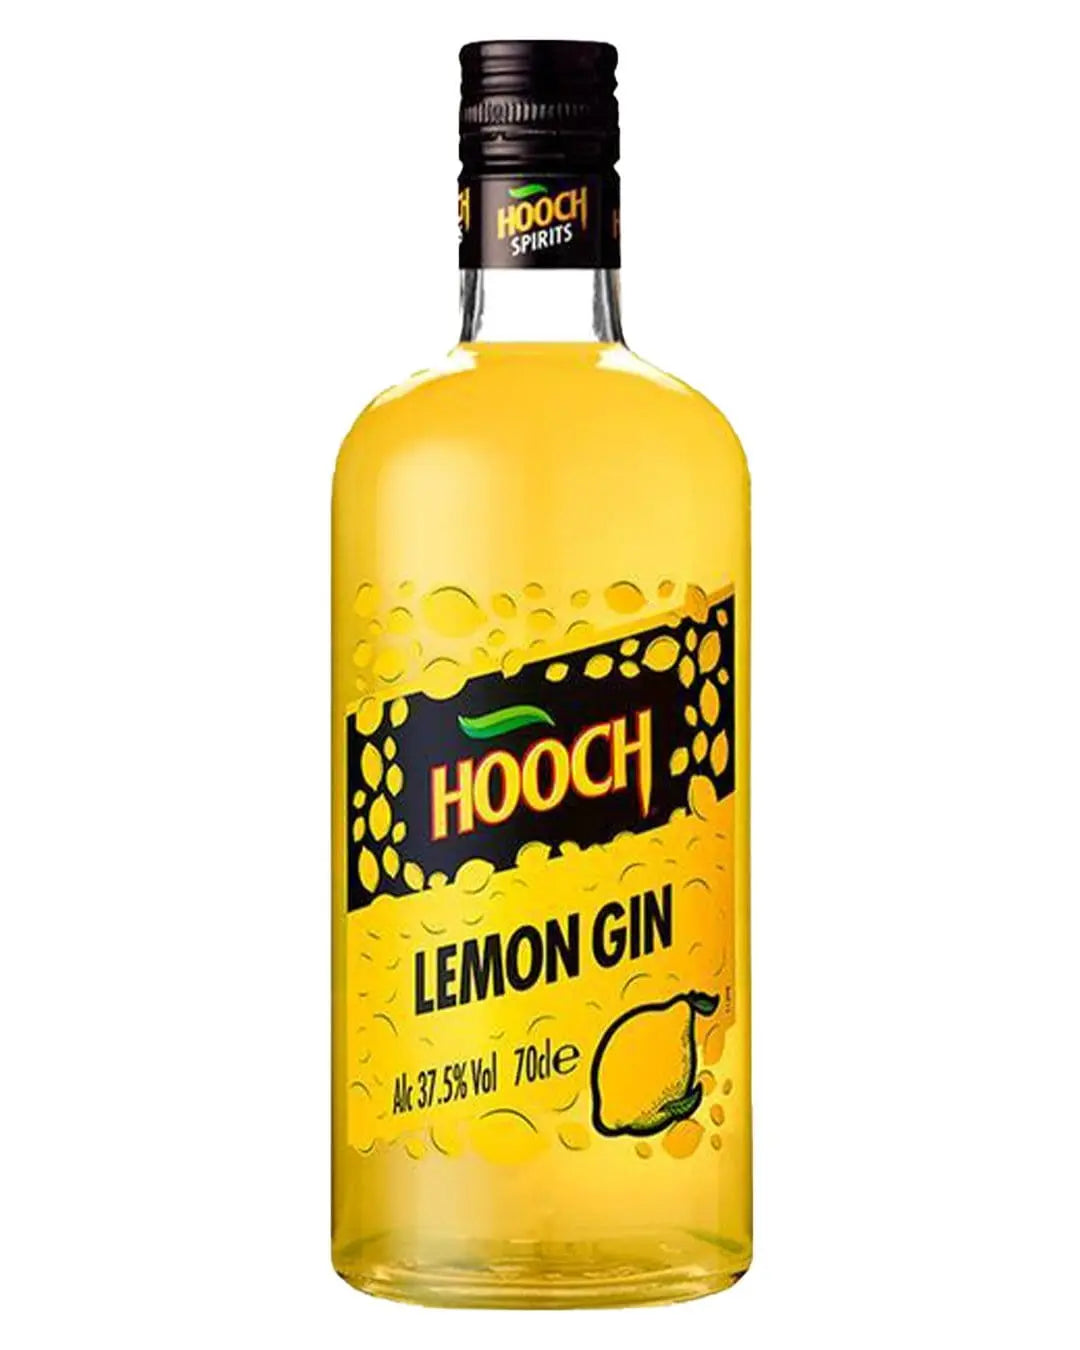 Hooch Lemon Gin, 70 cl Gin 5032678009844